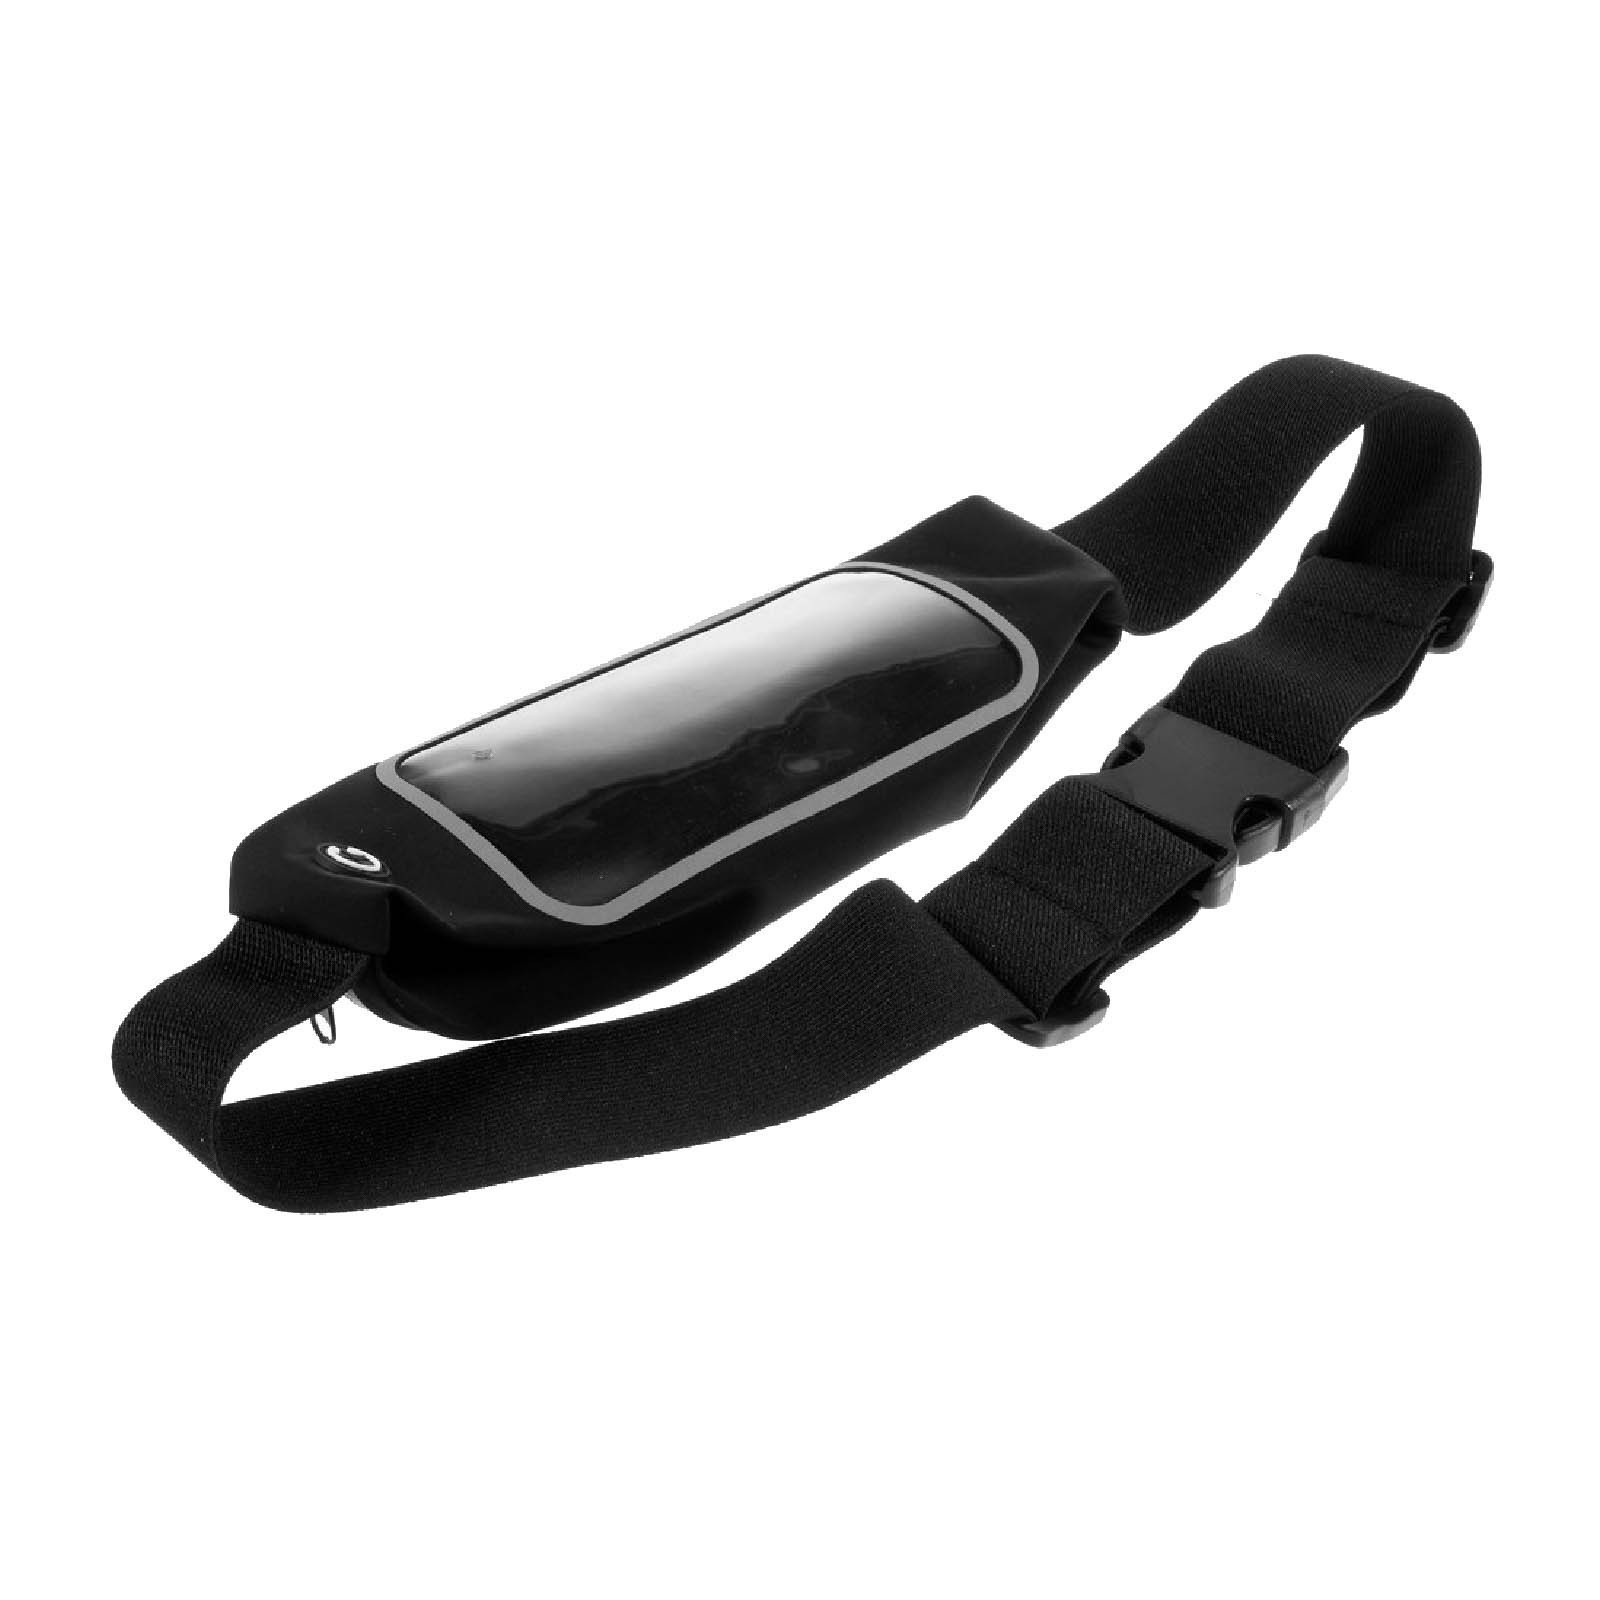 Etui ceinture sport pour smartphone waterproof - AKASHI - ALT16175 